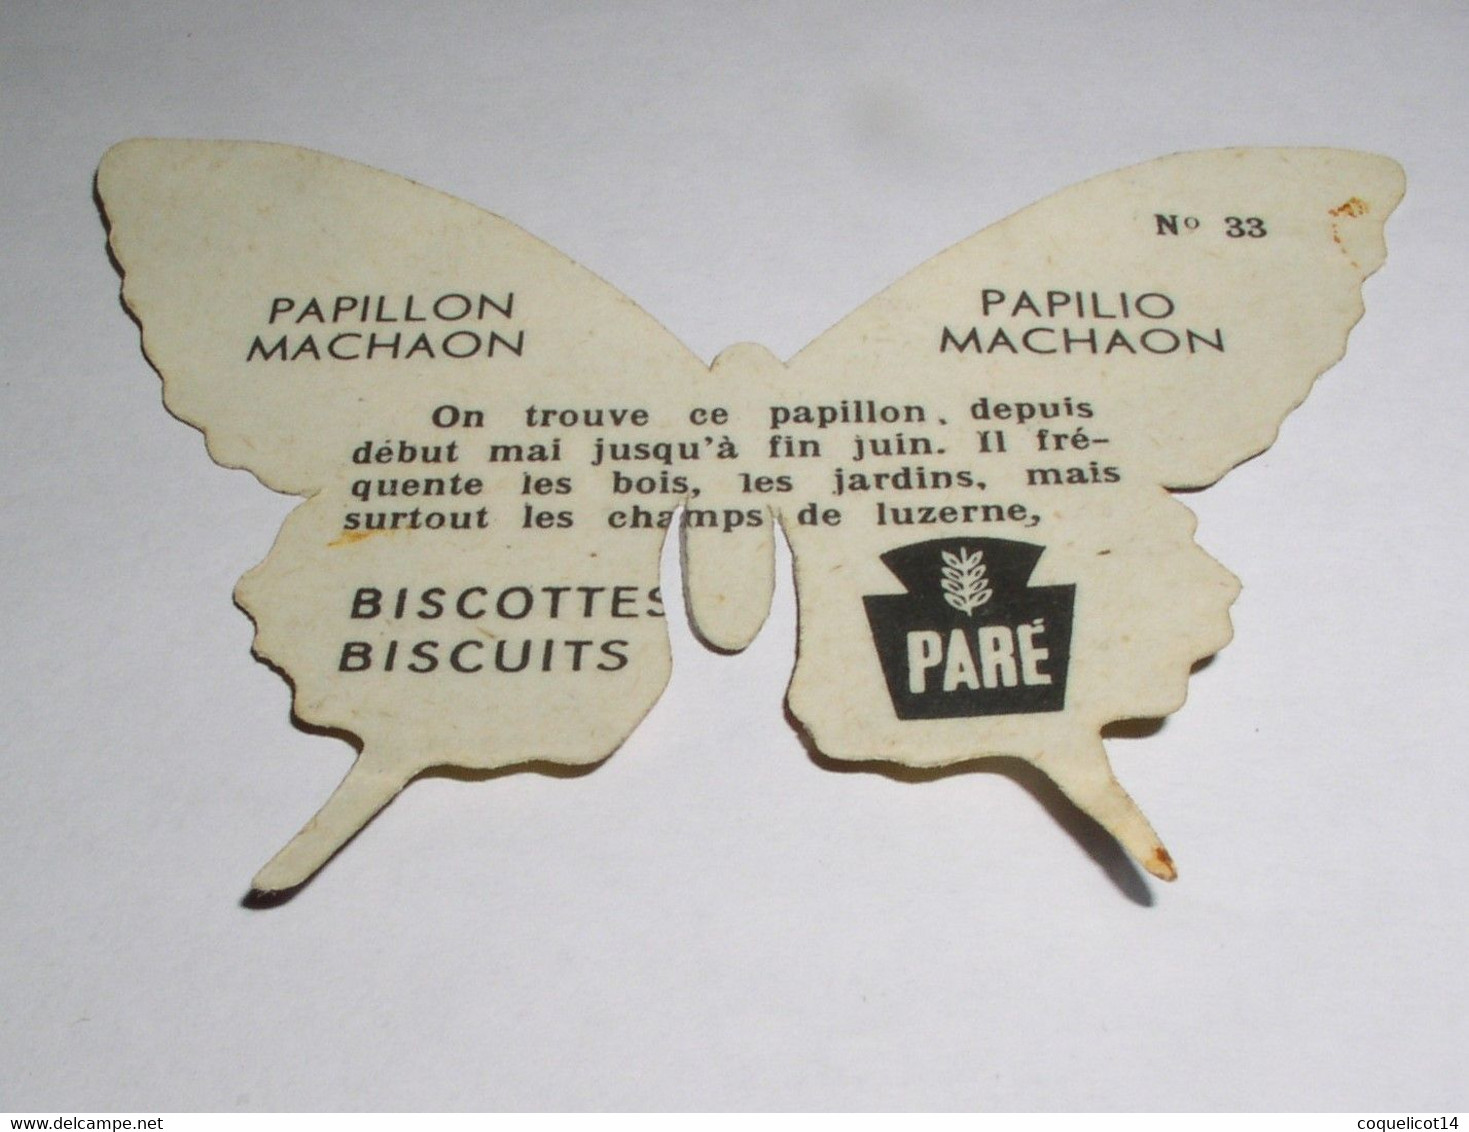 Biscottes Biscuits Paré Découpis Papillon N°33 Papillon Machaon - Tiere